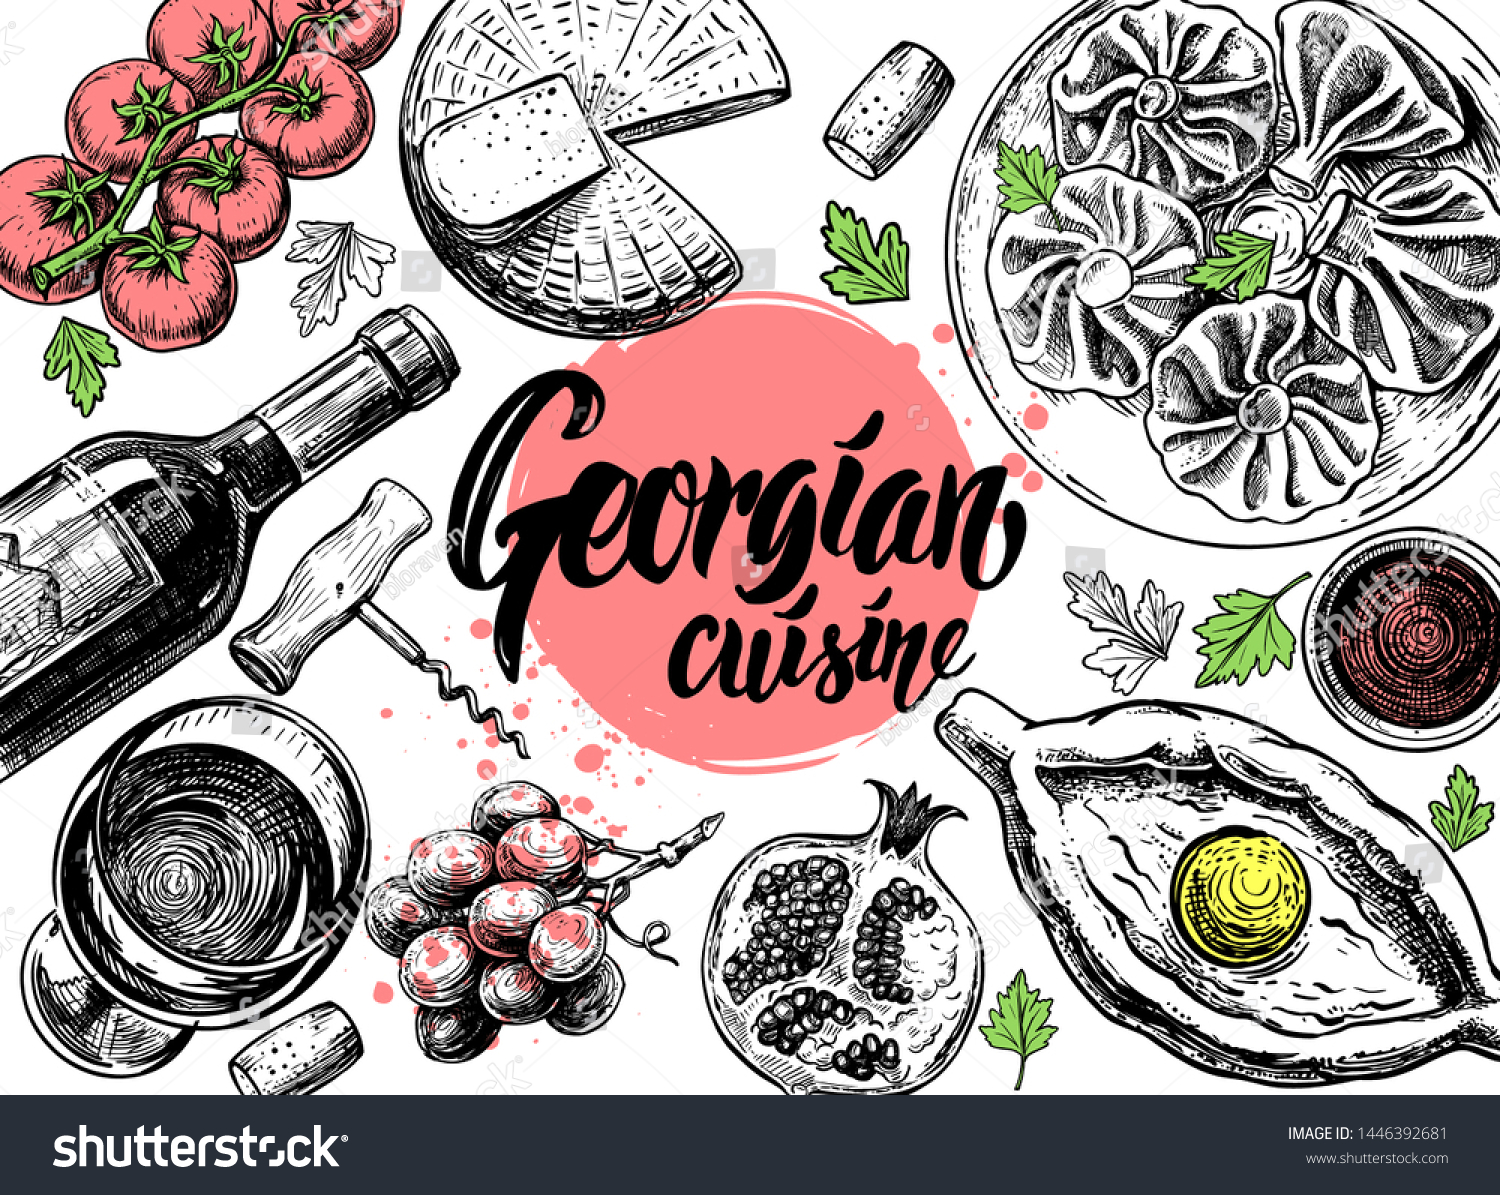 Грузинская кухня вектор